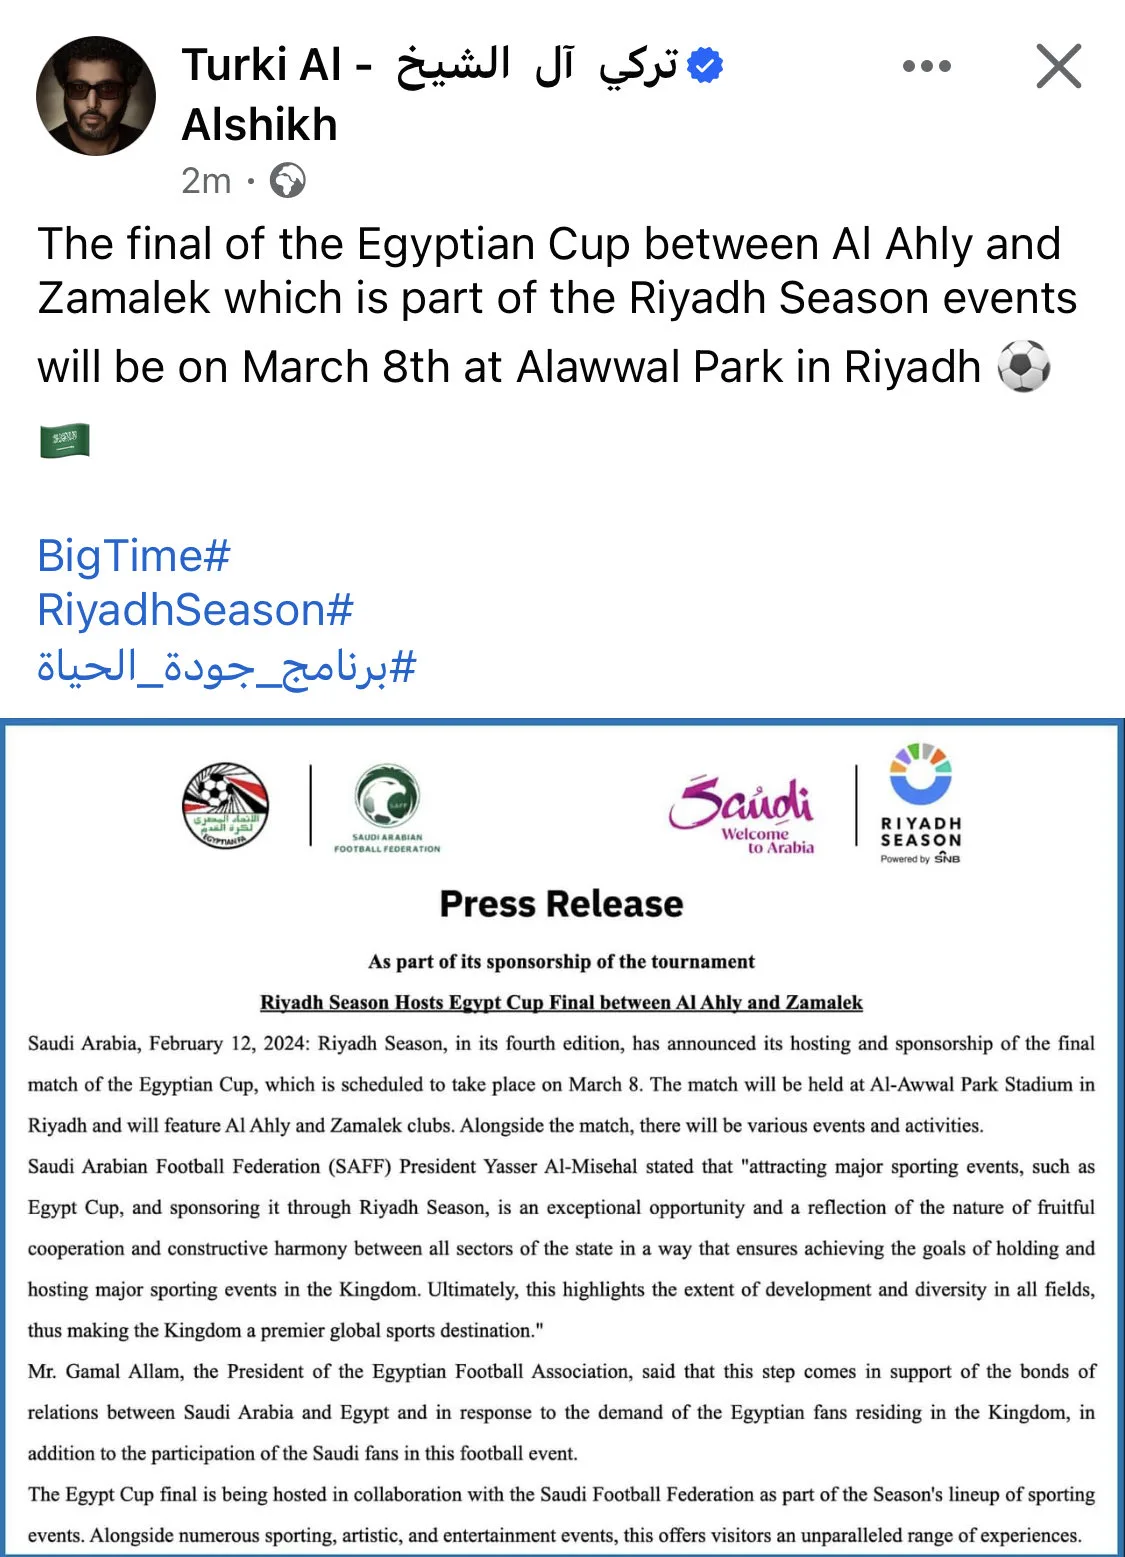 تركي آل الشيخ يعلن ملعب نهائي كأس مصر بين الزمالك والأهلي في الرياض - صورة